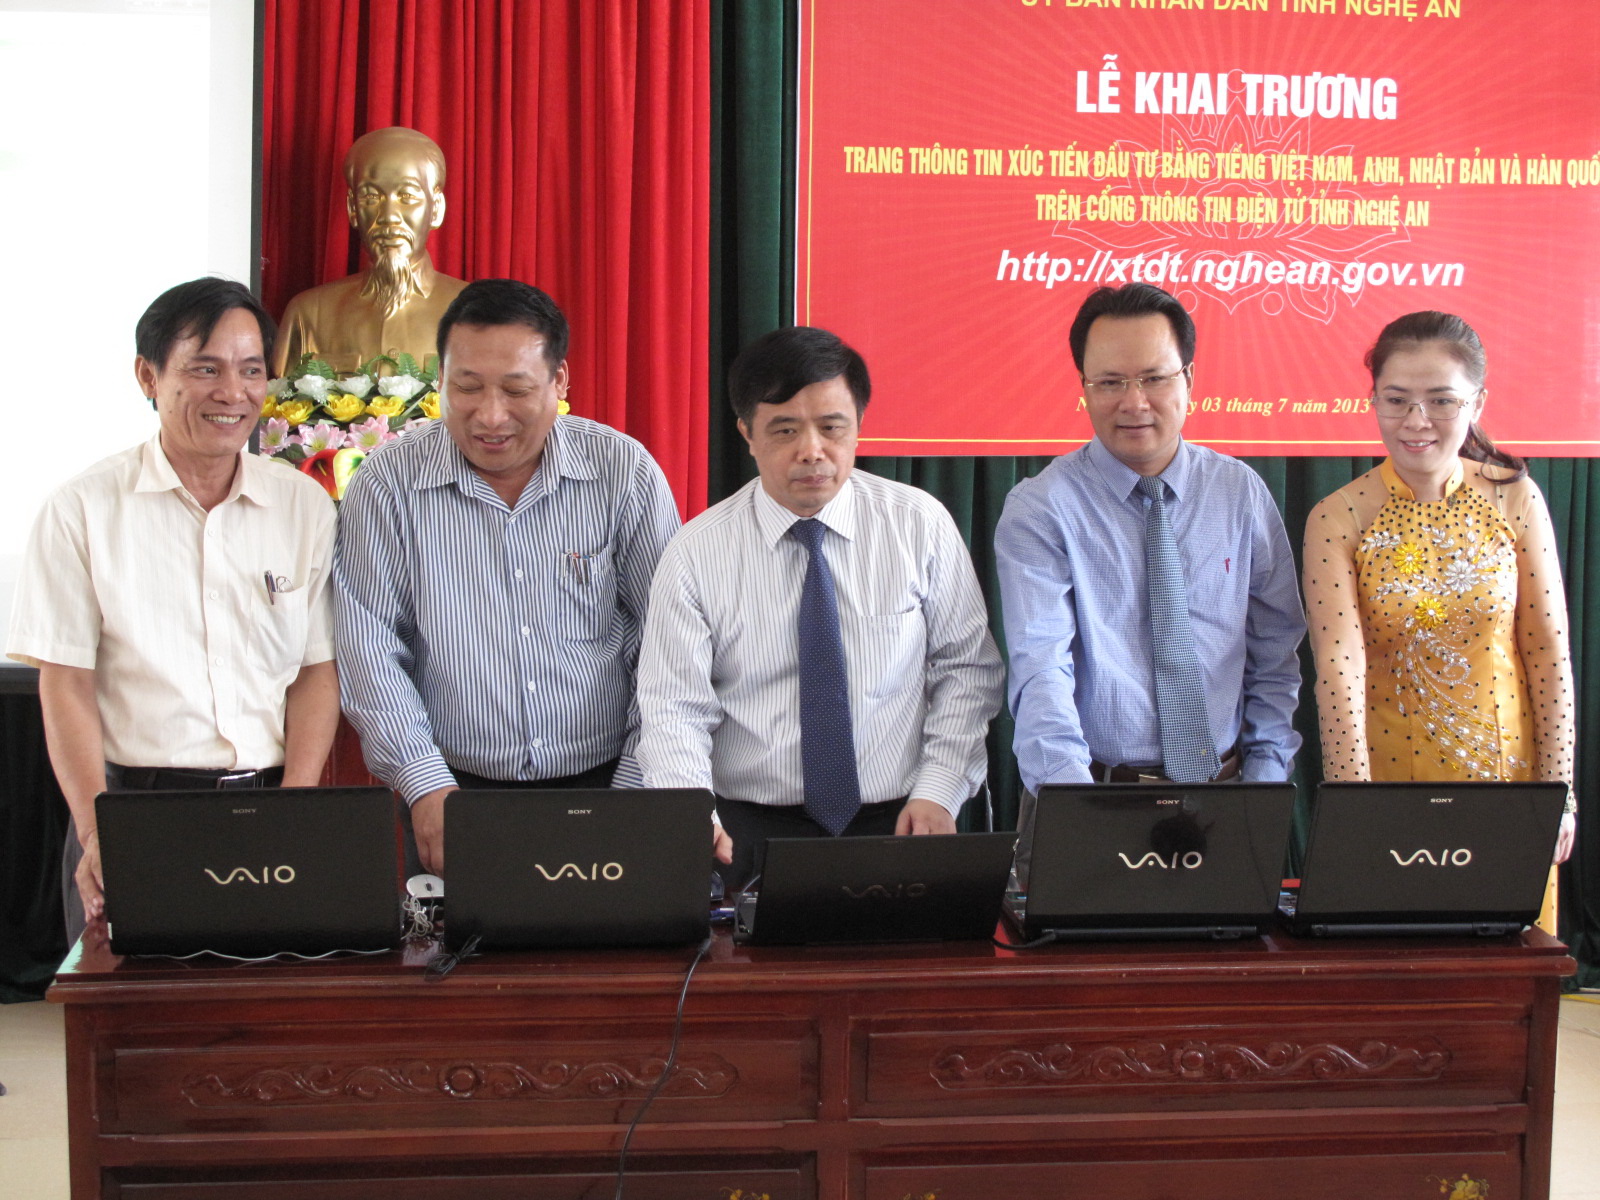 En 2013, la province de Nghe An a inauguré un site web en quatre langues pour promouvoir les investissements.